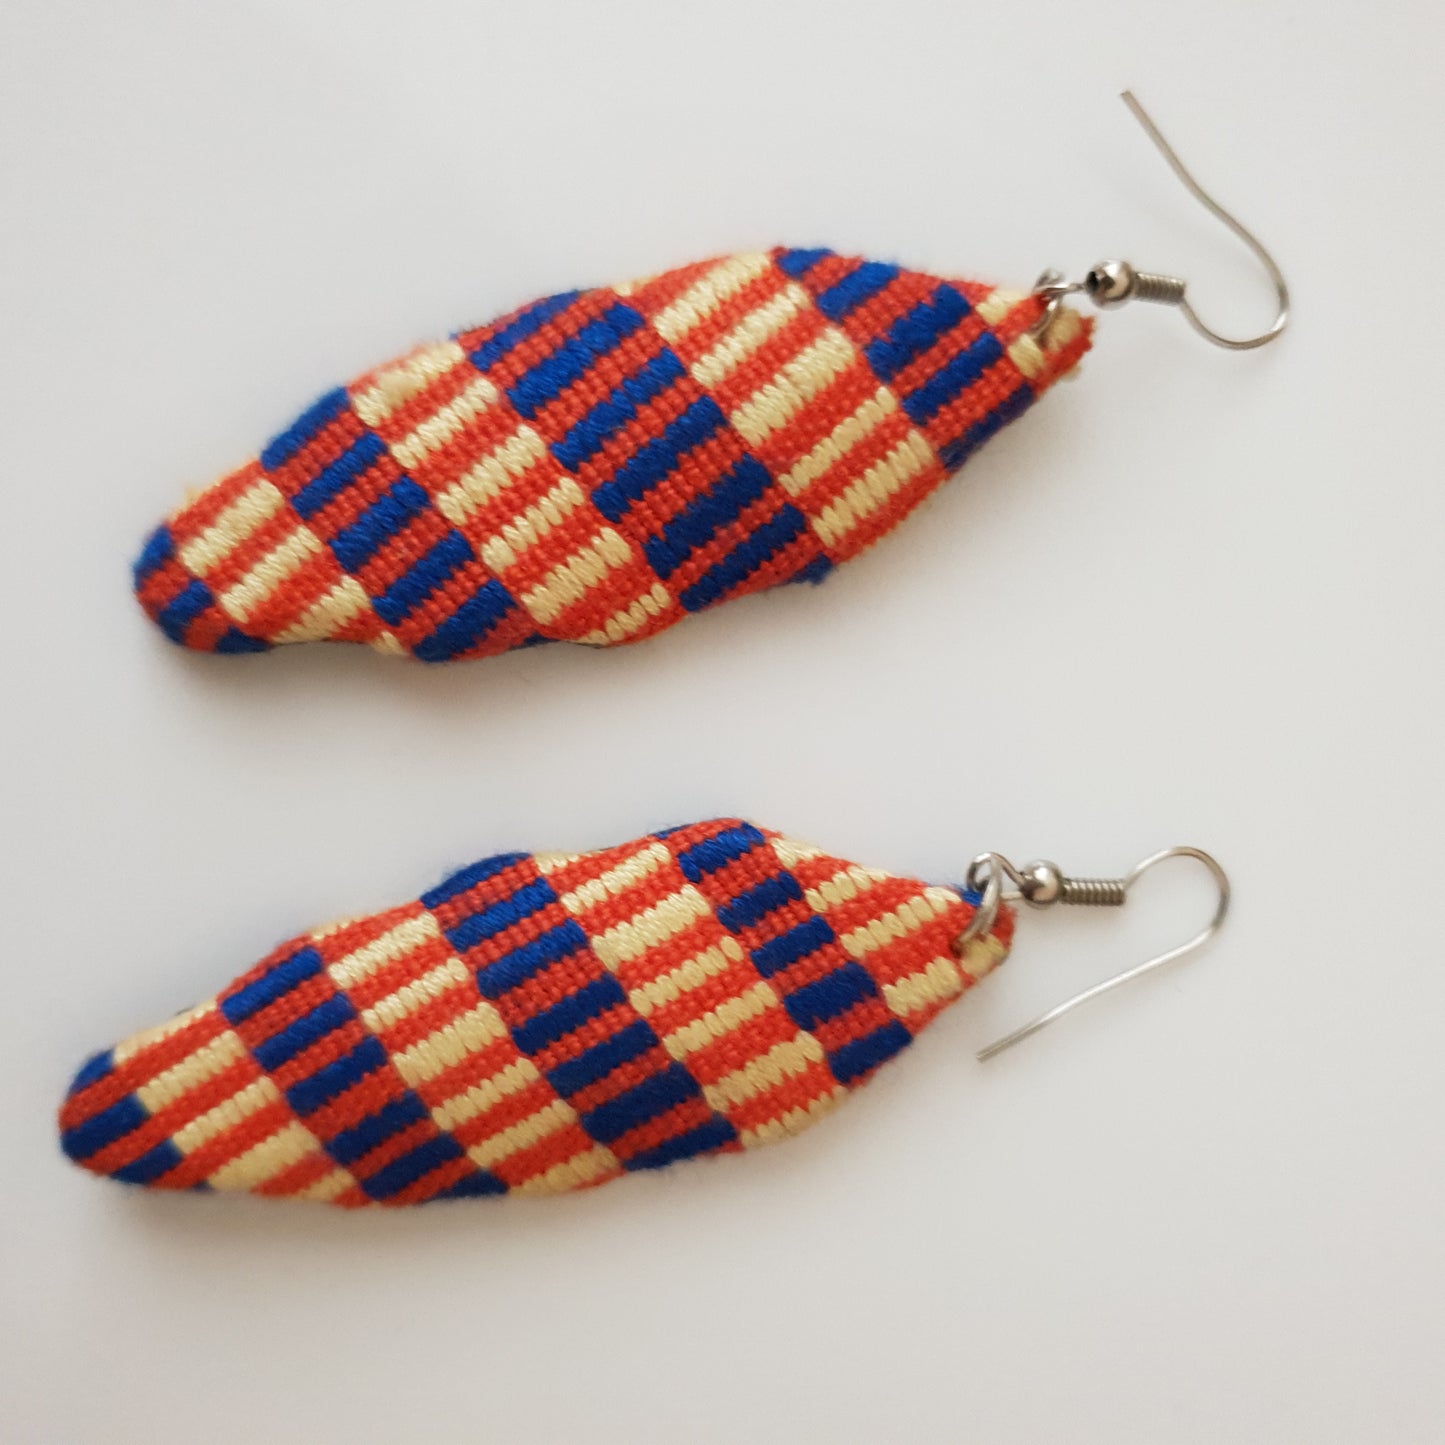 Mixed coloured kente fabric earrings